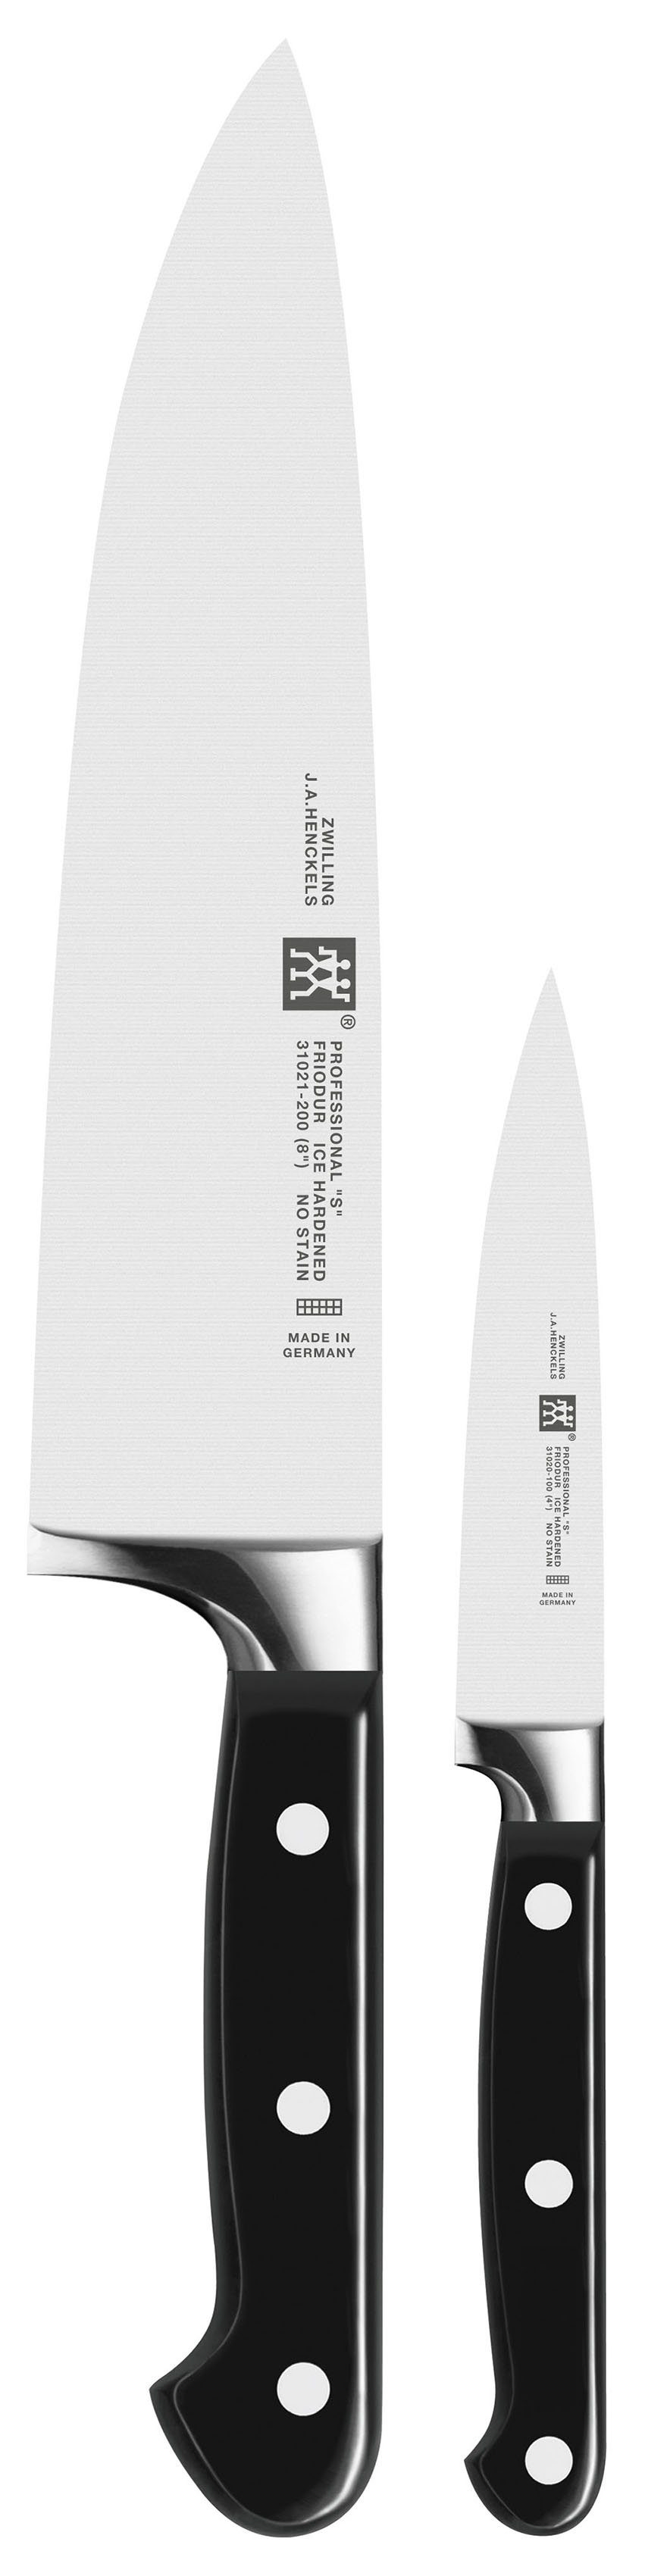 Zwilling Messer-Set SIGMAFORGE® Professional S (Set, 2-tlg., 1 Spick- und Garniermesser (10 cm), 1 Kochmesser (20 cm), Edelstahl 18/10, aus einem Stück geschmiedet